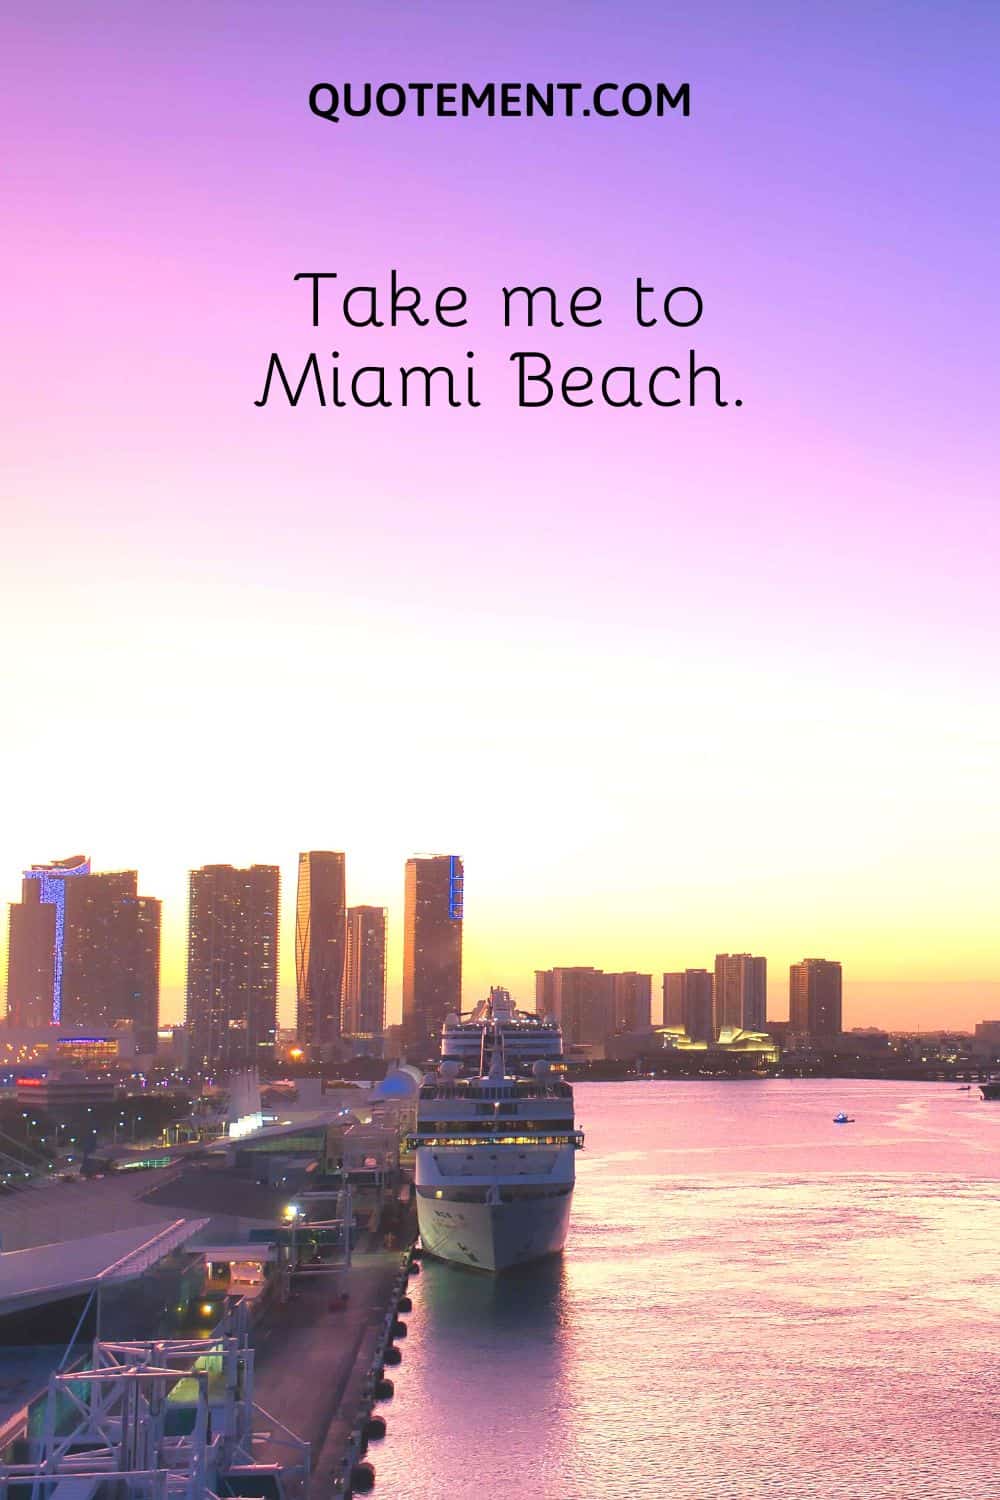 Take me to Miami Beach